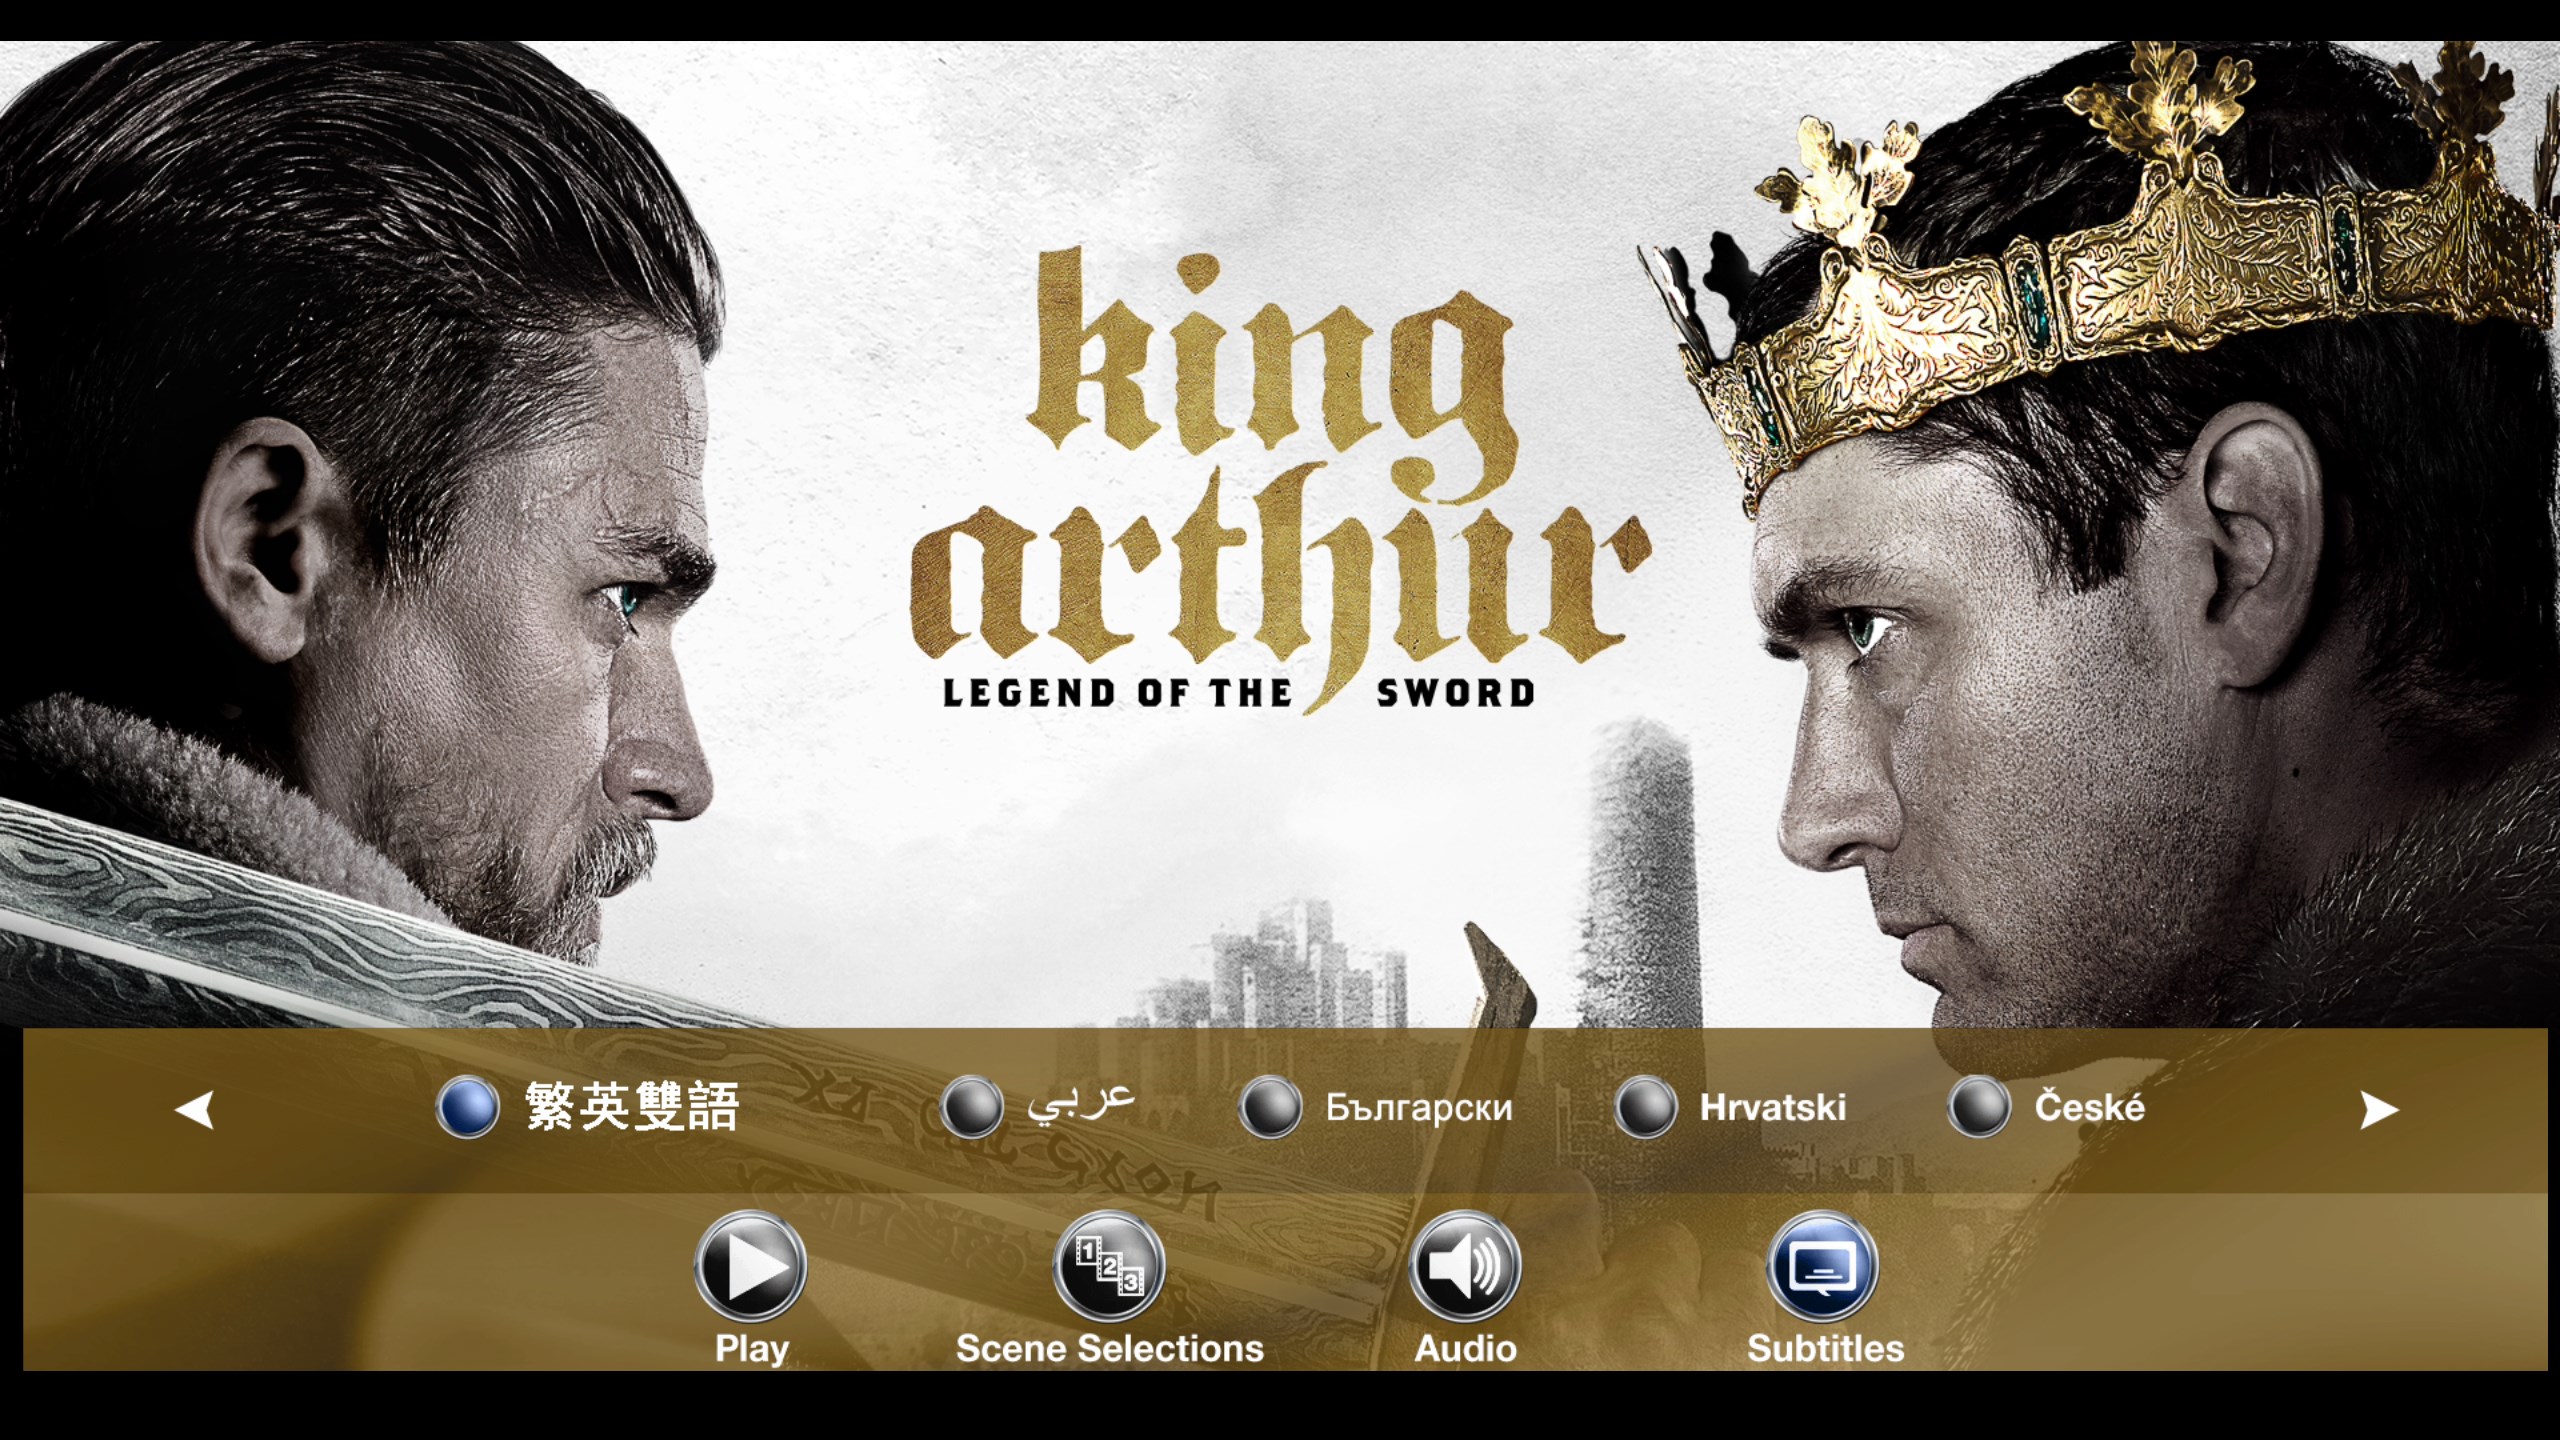 亚瑟王：斗兽争霸/亚瑟王：圣剑传奇【3D原盘DIY简繁/双语字幕】 King Arthur Legend of the Sword 2017 3D 1080p Blu-ray AVC TrueHD7.1 Atmos-Thor@HDSky    [40.86 GB ]-5.jpg